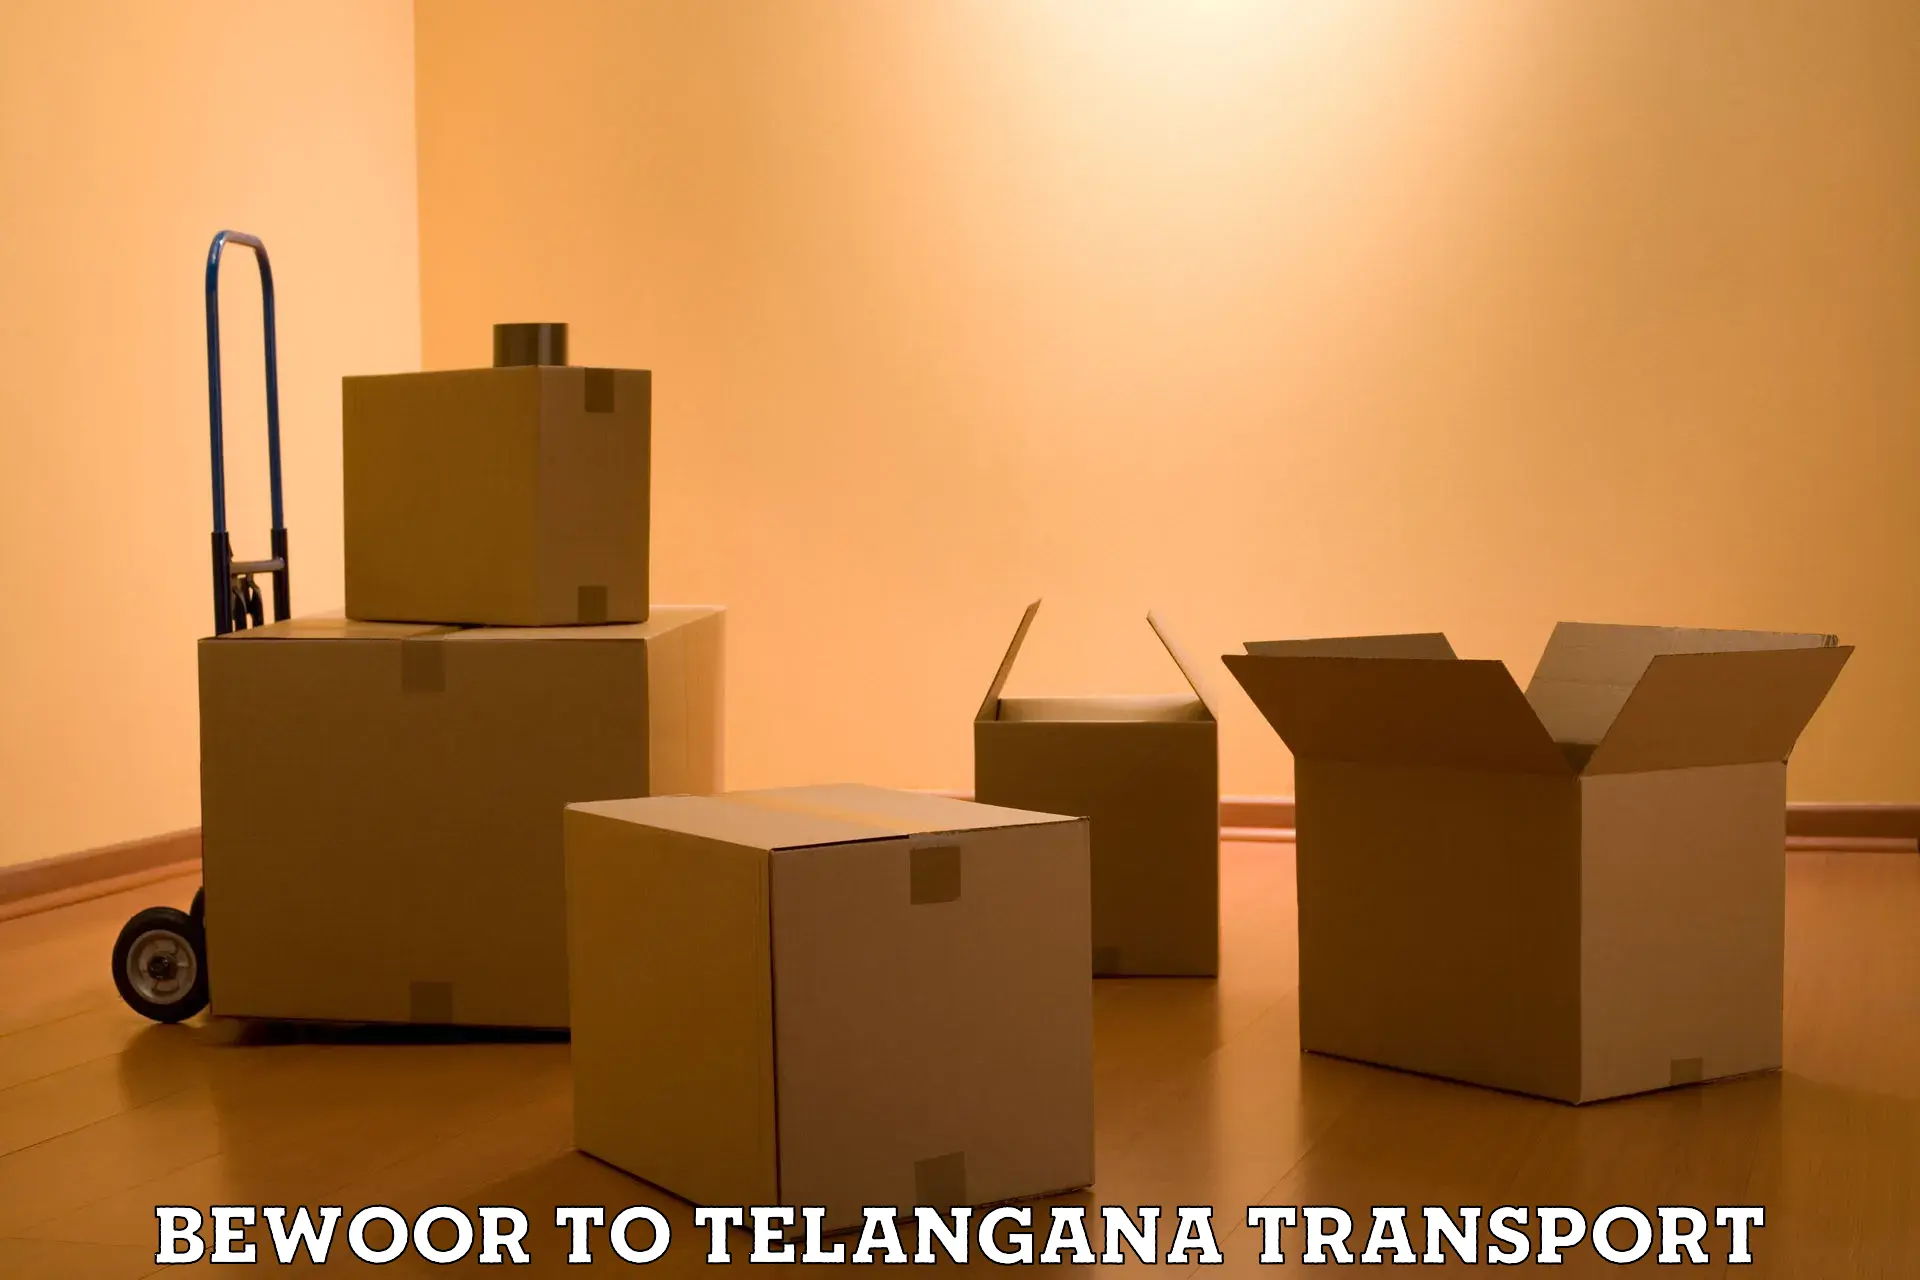 Container transport service Bewoor to Veenavanka